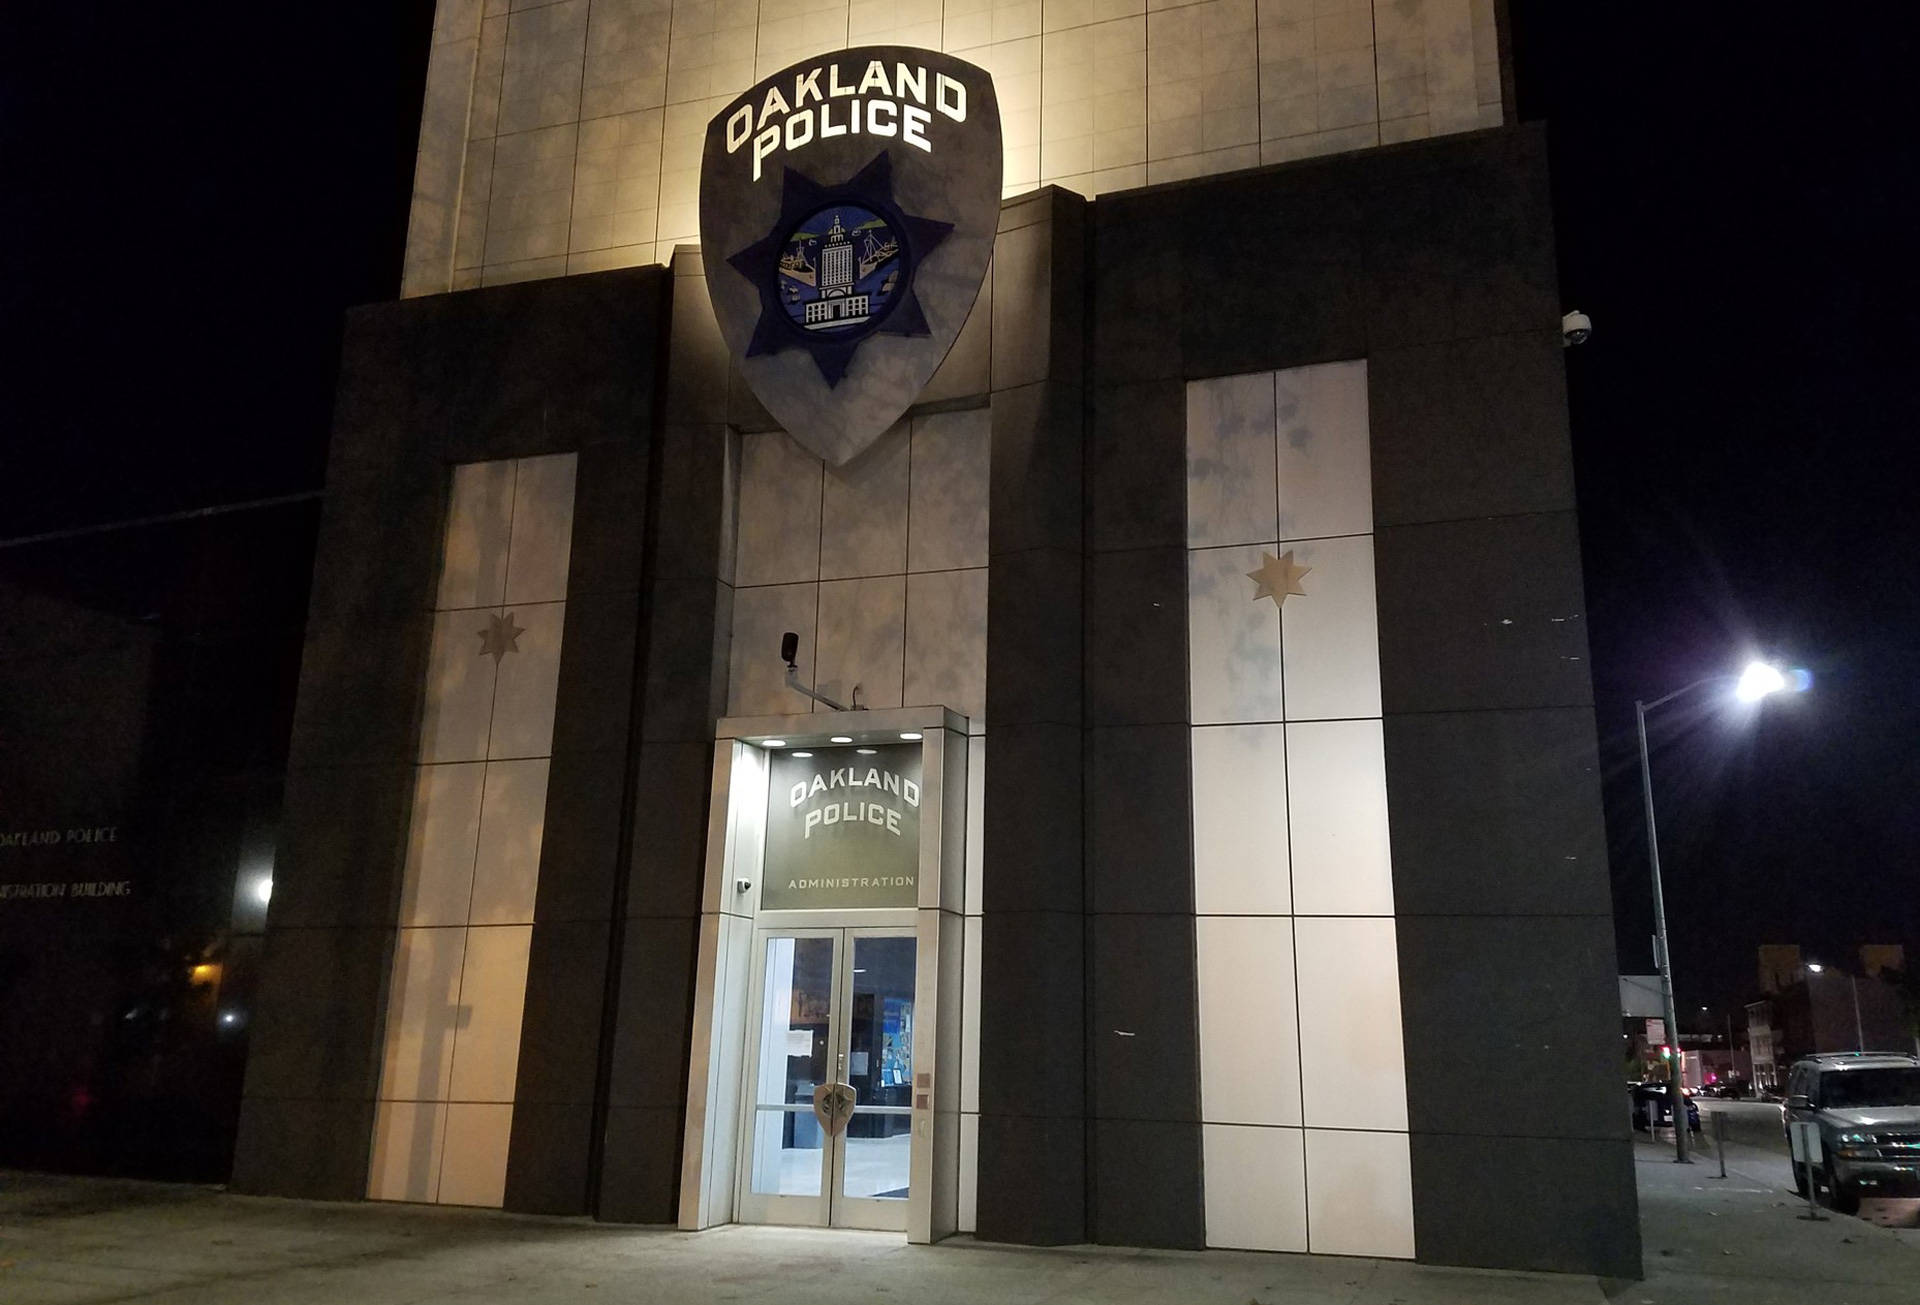 Oakland police headquarters on Nov. 12, 2016. Alex Emslie/KQED